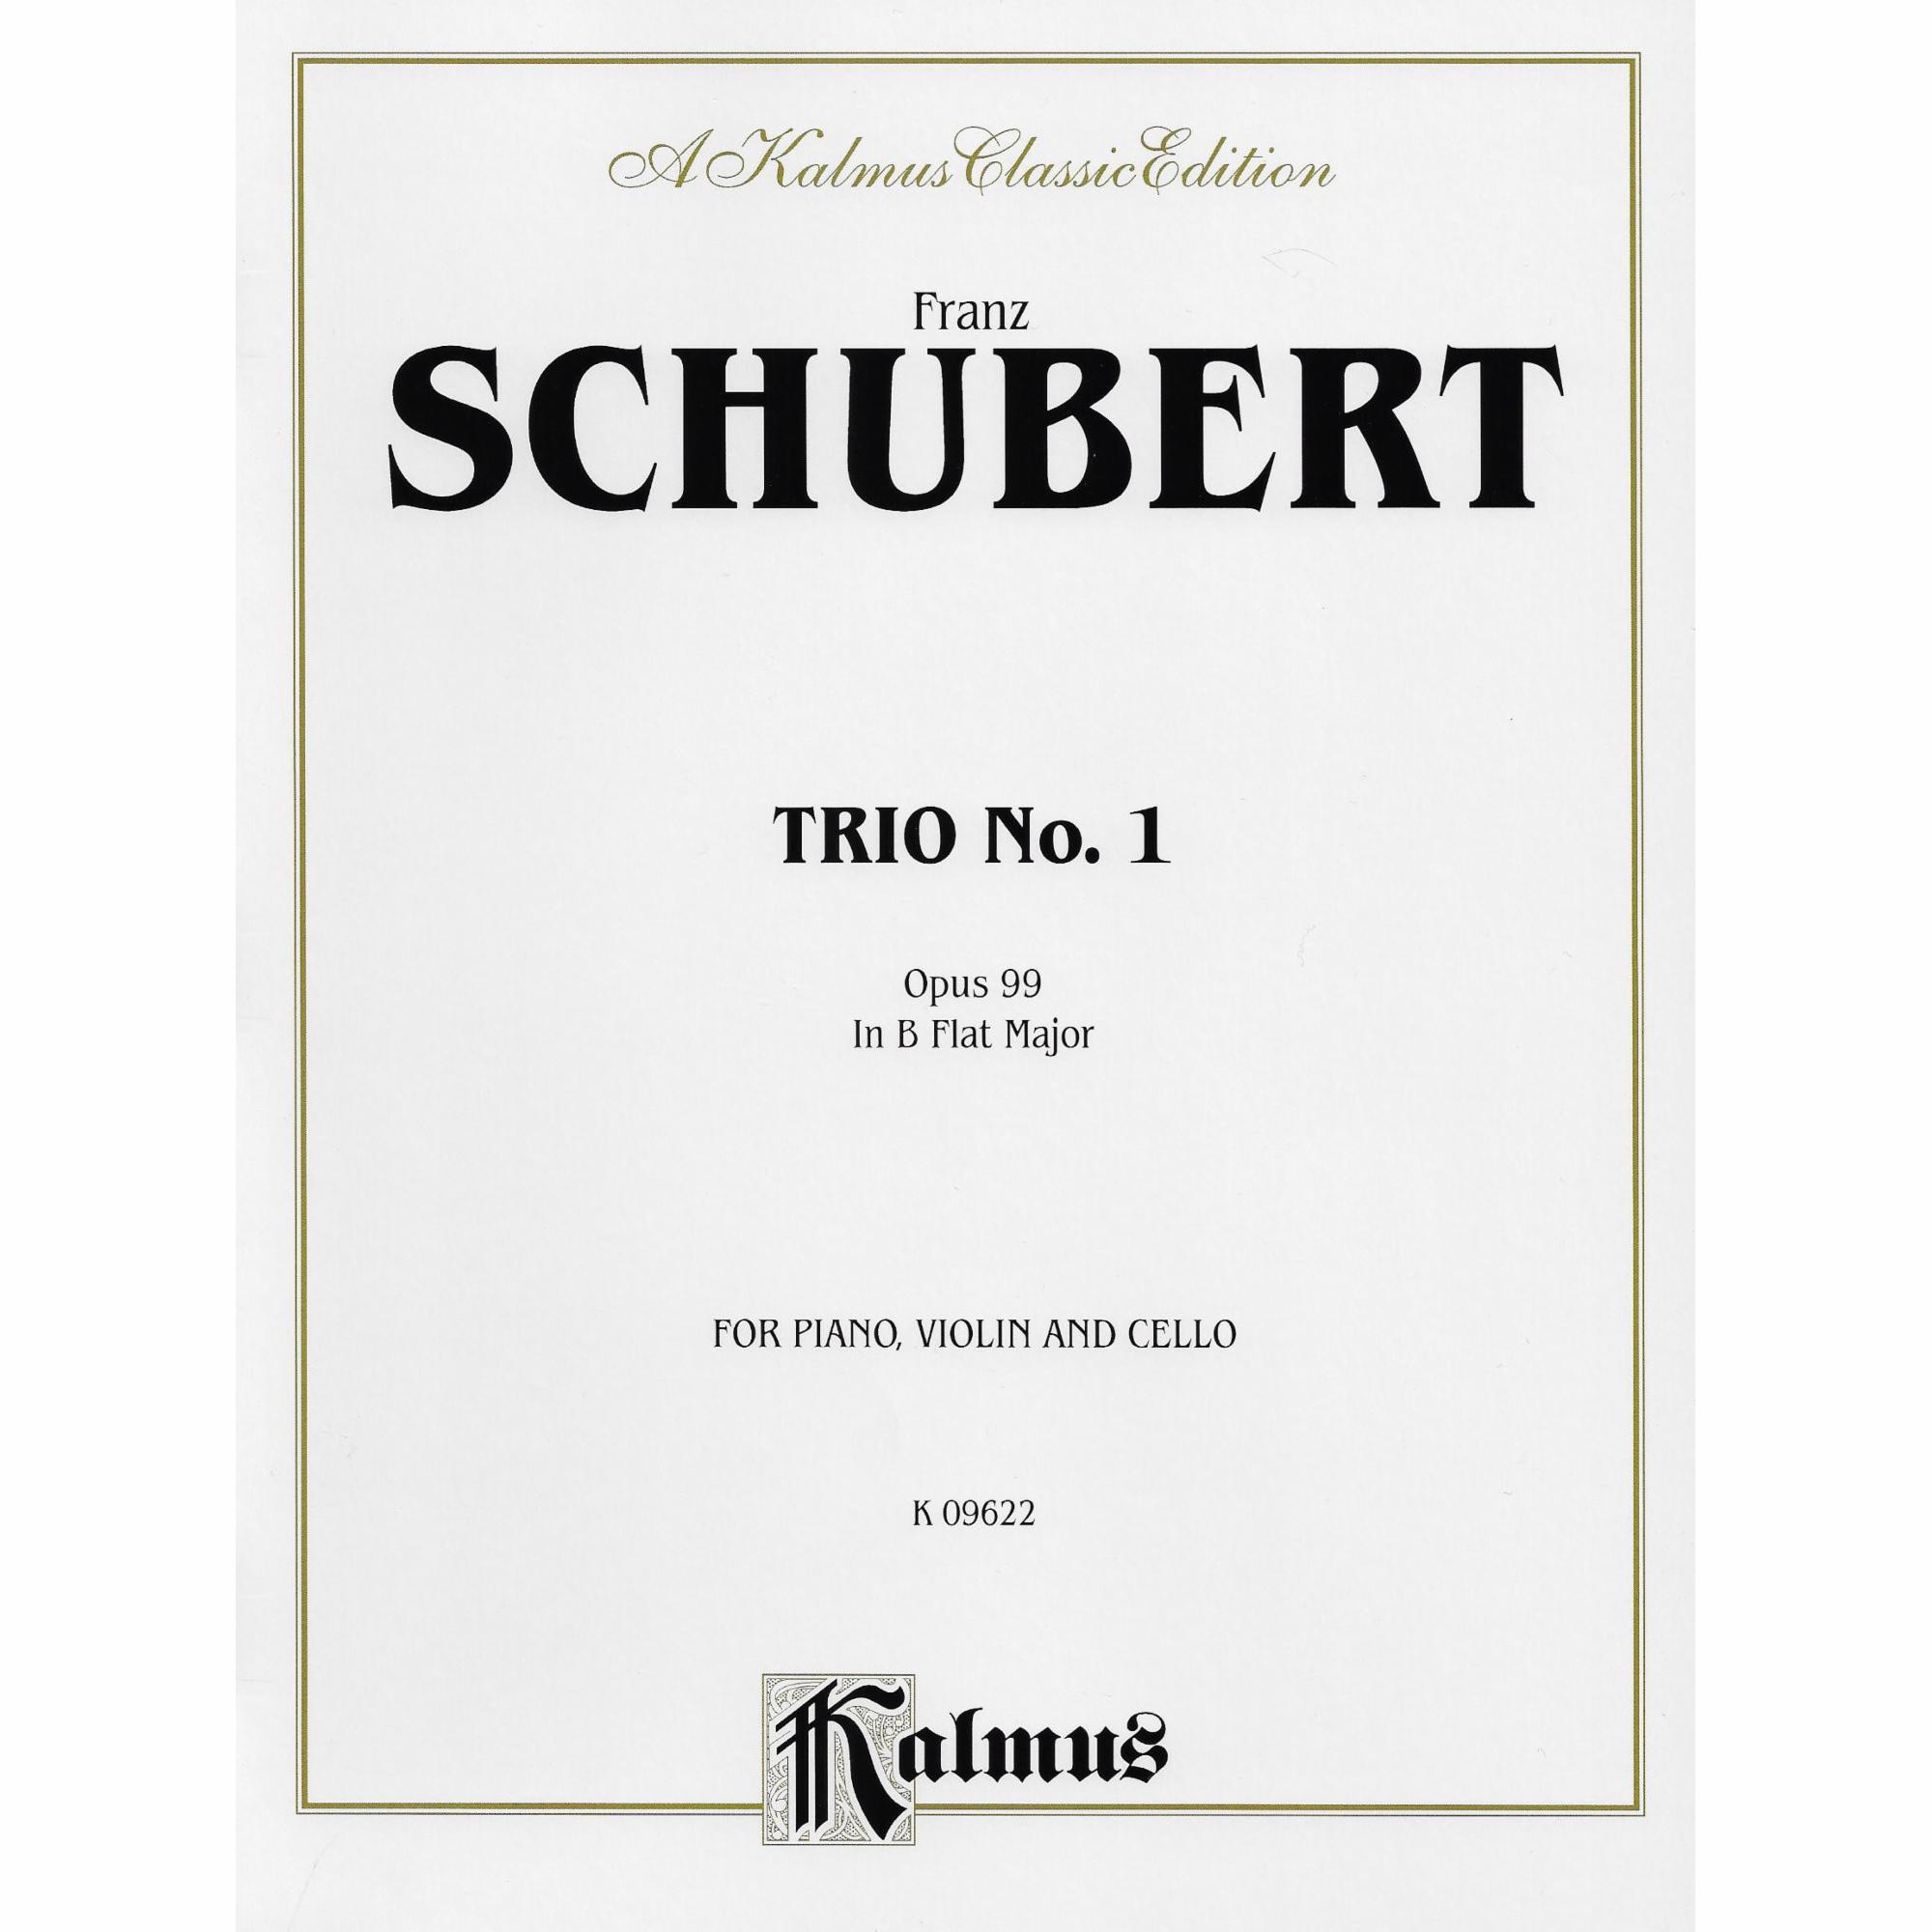 Schubert -- Piano Trio No. 1 in B-flat Major, Op. 99